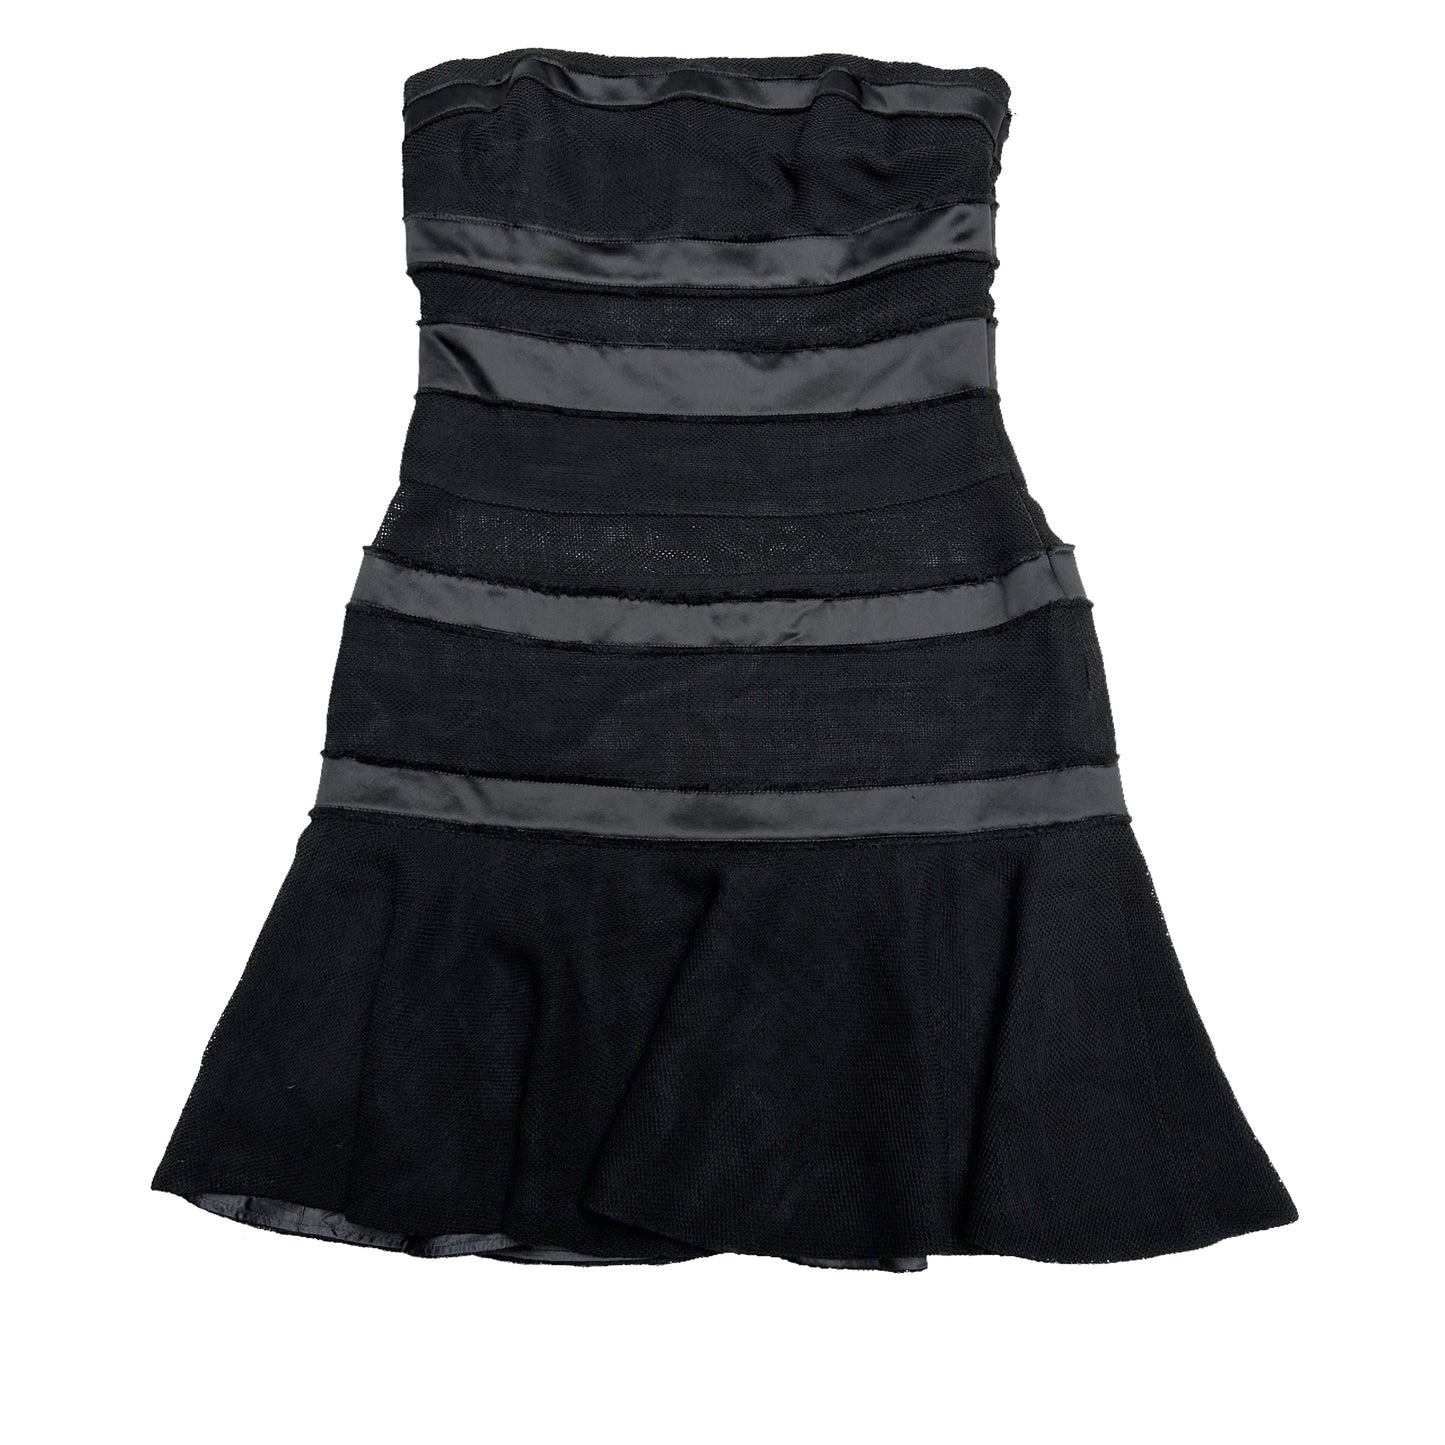 Black Bustier Dress - XS